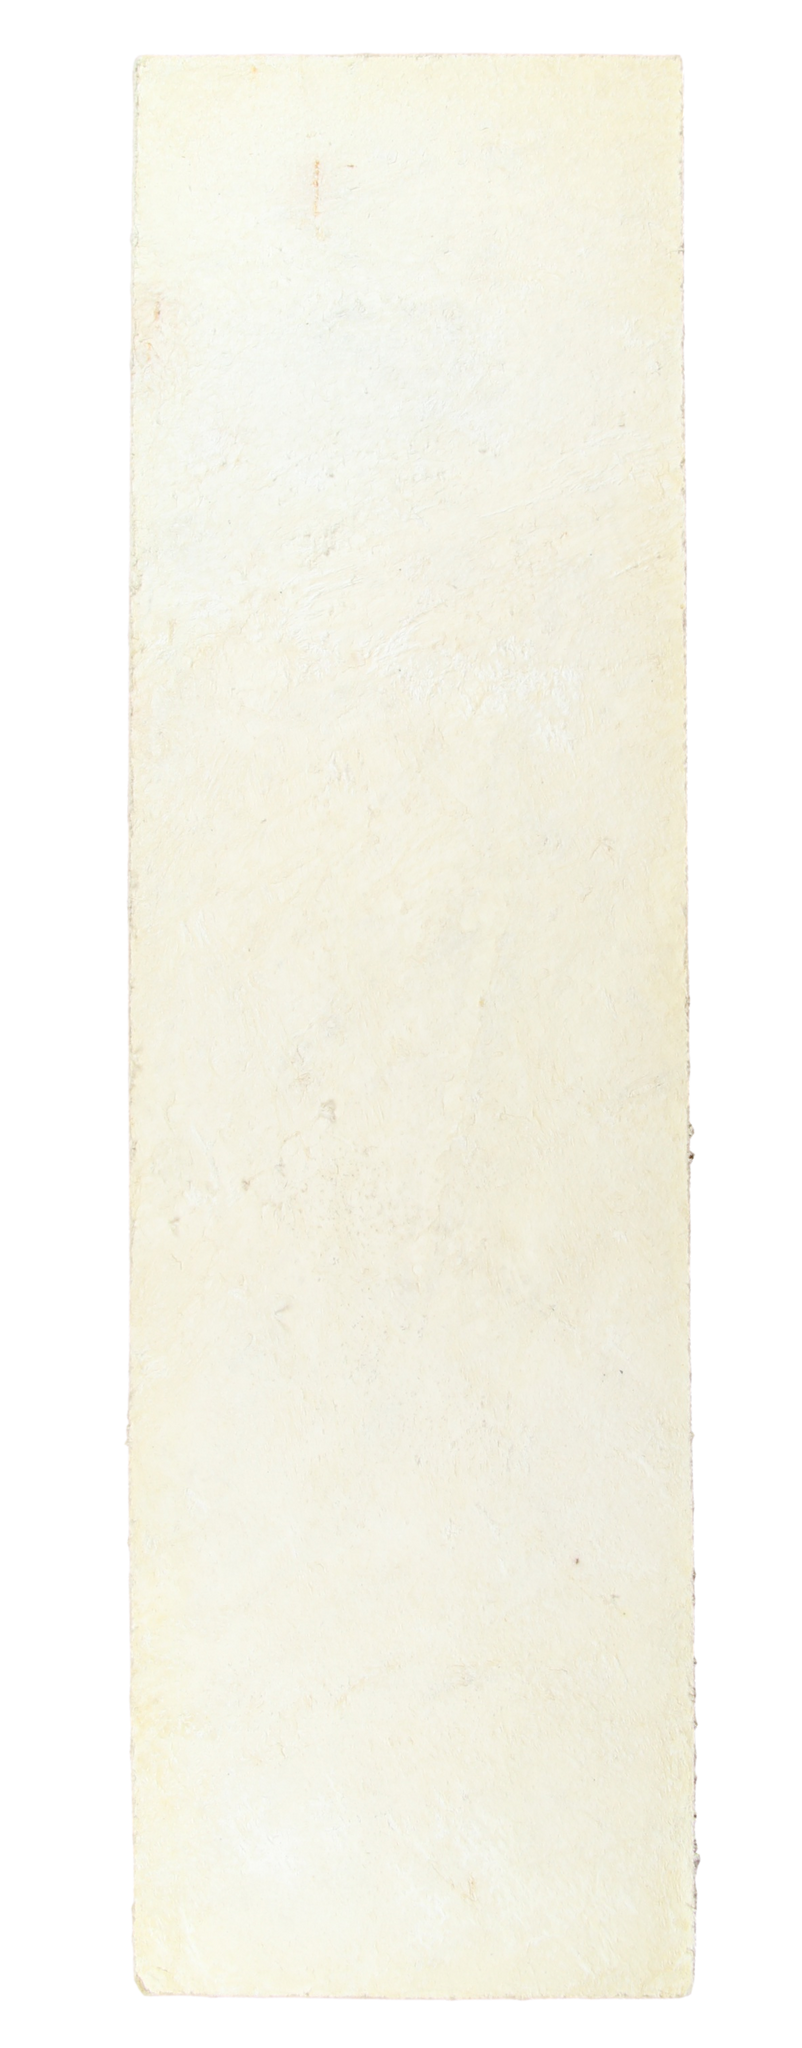 White Latigo Moccasin Soles - Pair- 5" x 14"